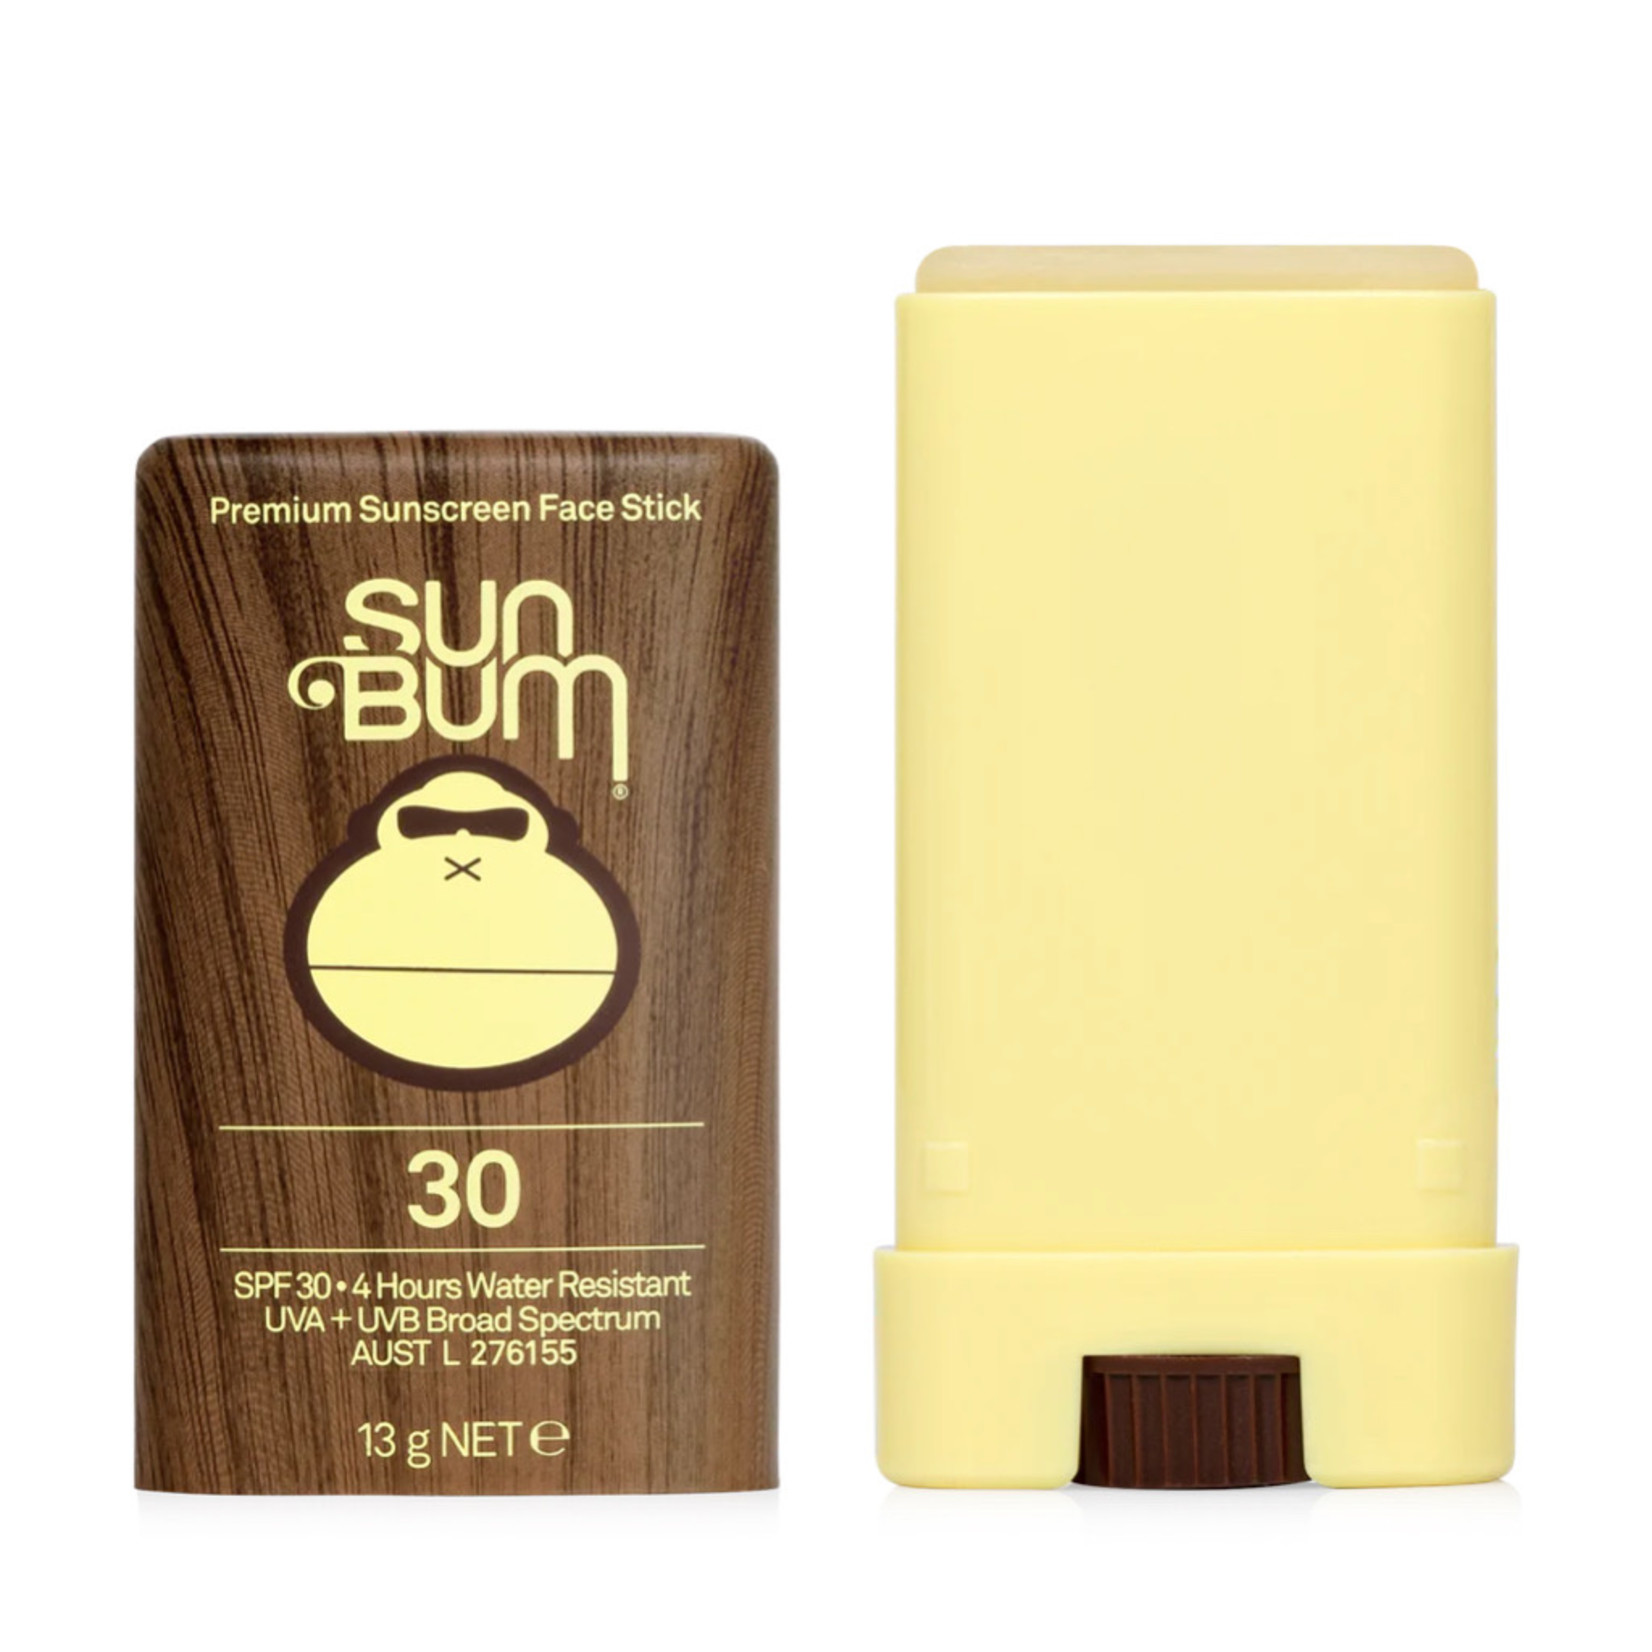 Sun Bum Sun Bum - Original SPF 30 Face Stick